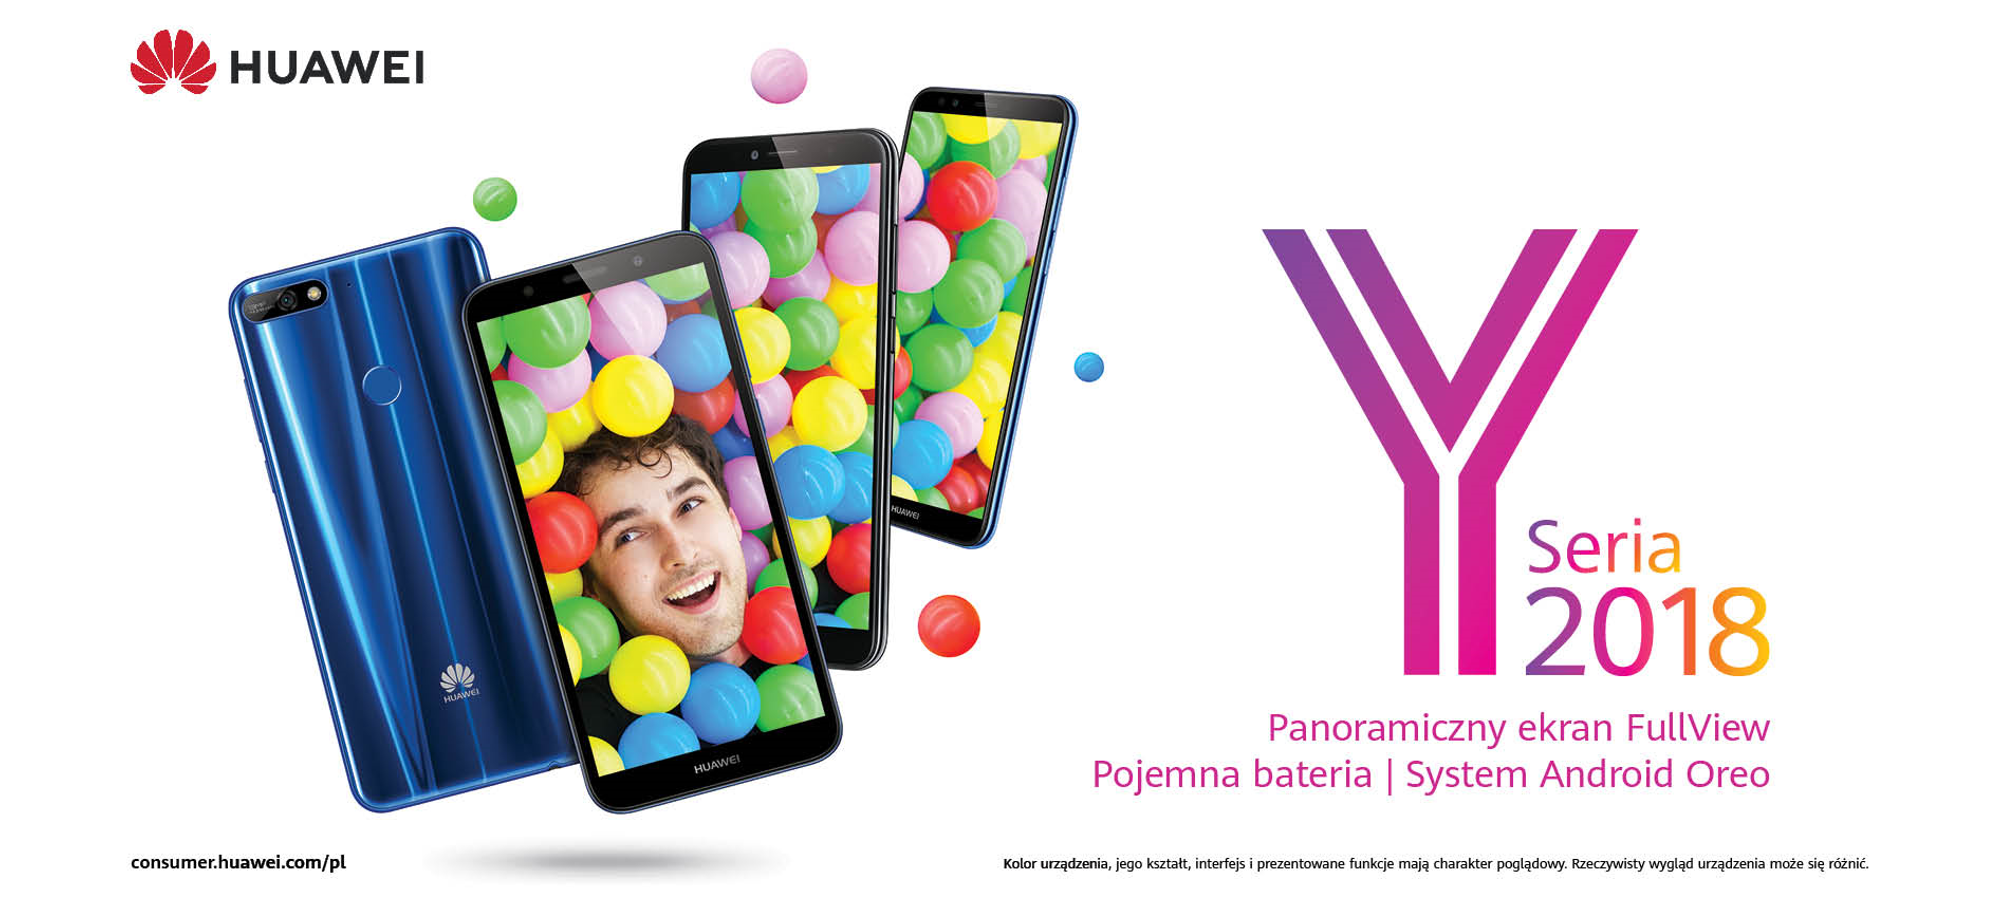 Huawei z kampanią smartfonów z serii Y